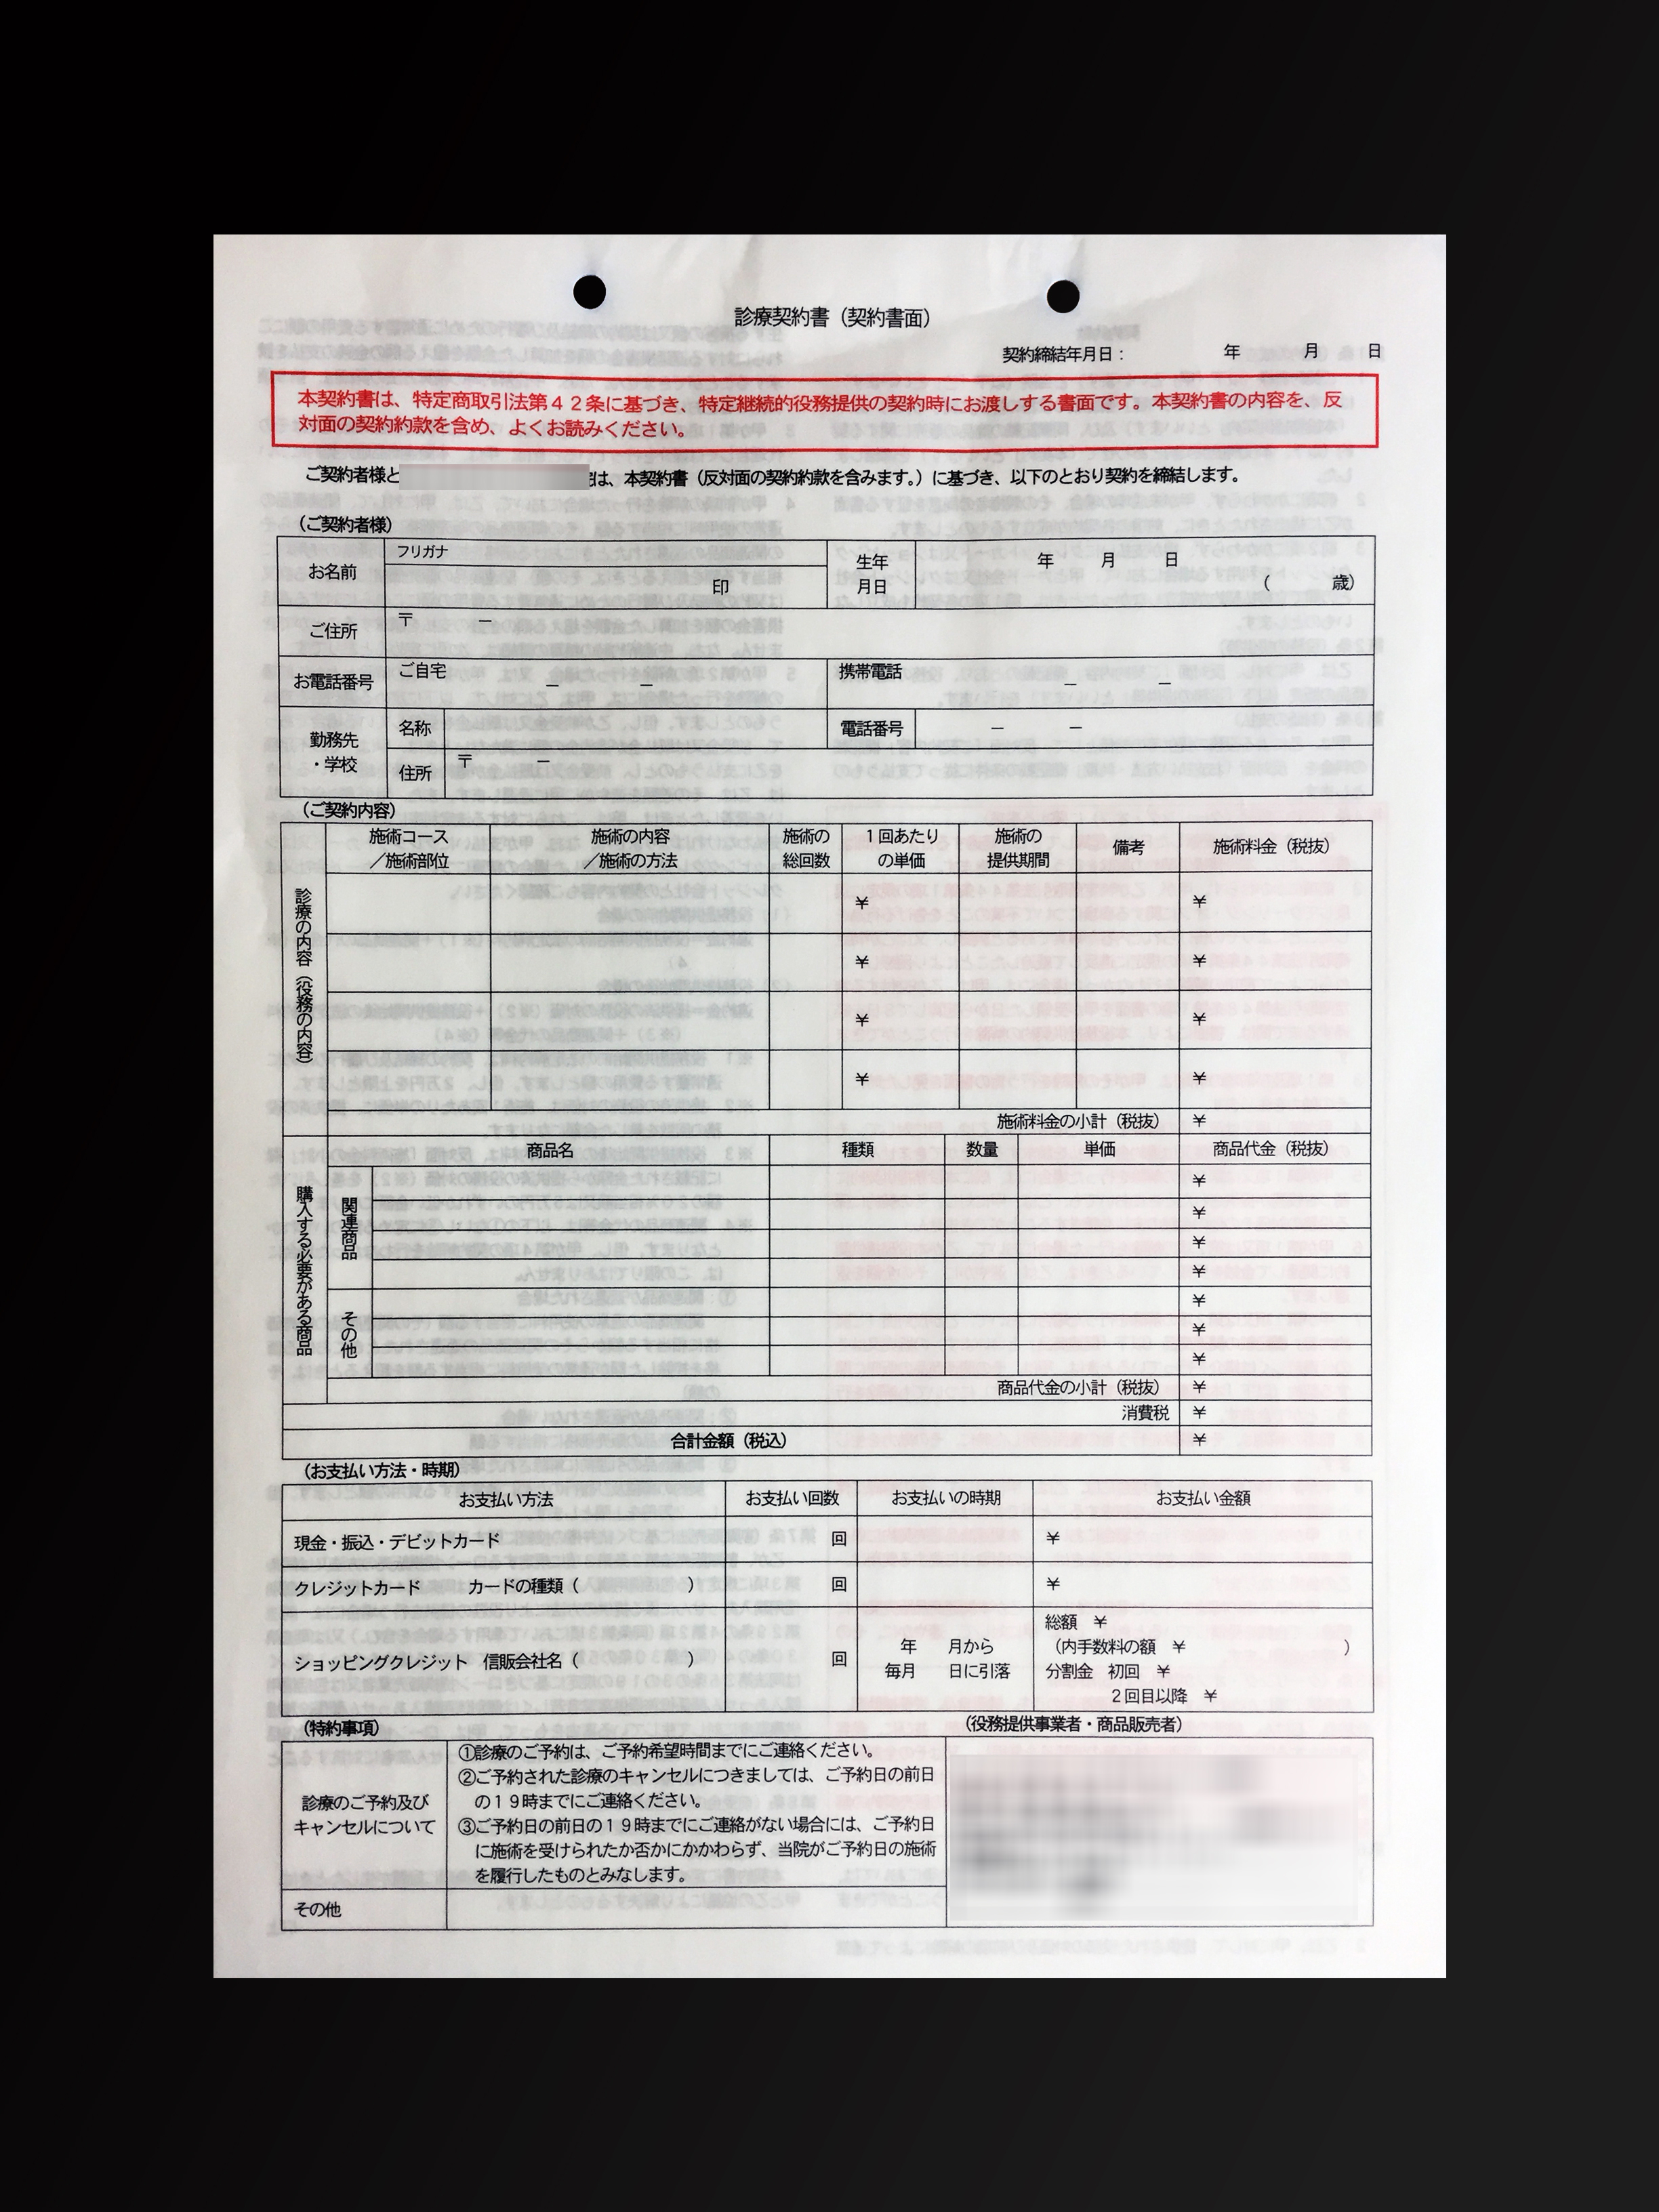 整骨院で使用する診療契約書(2枚複写)の伝票作成実績